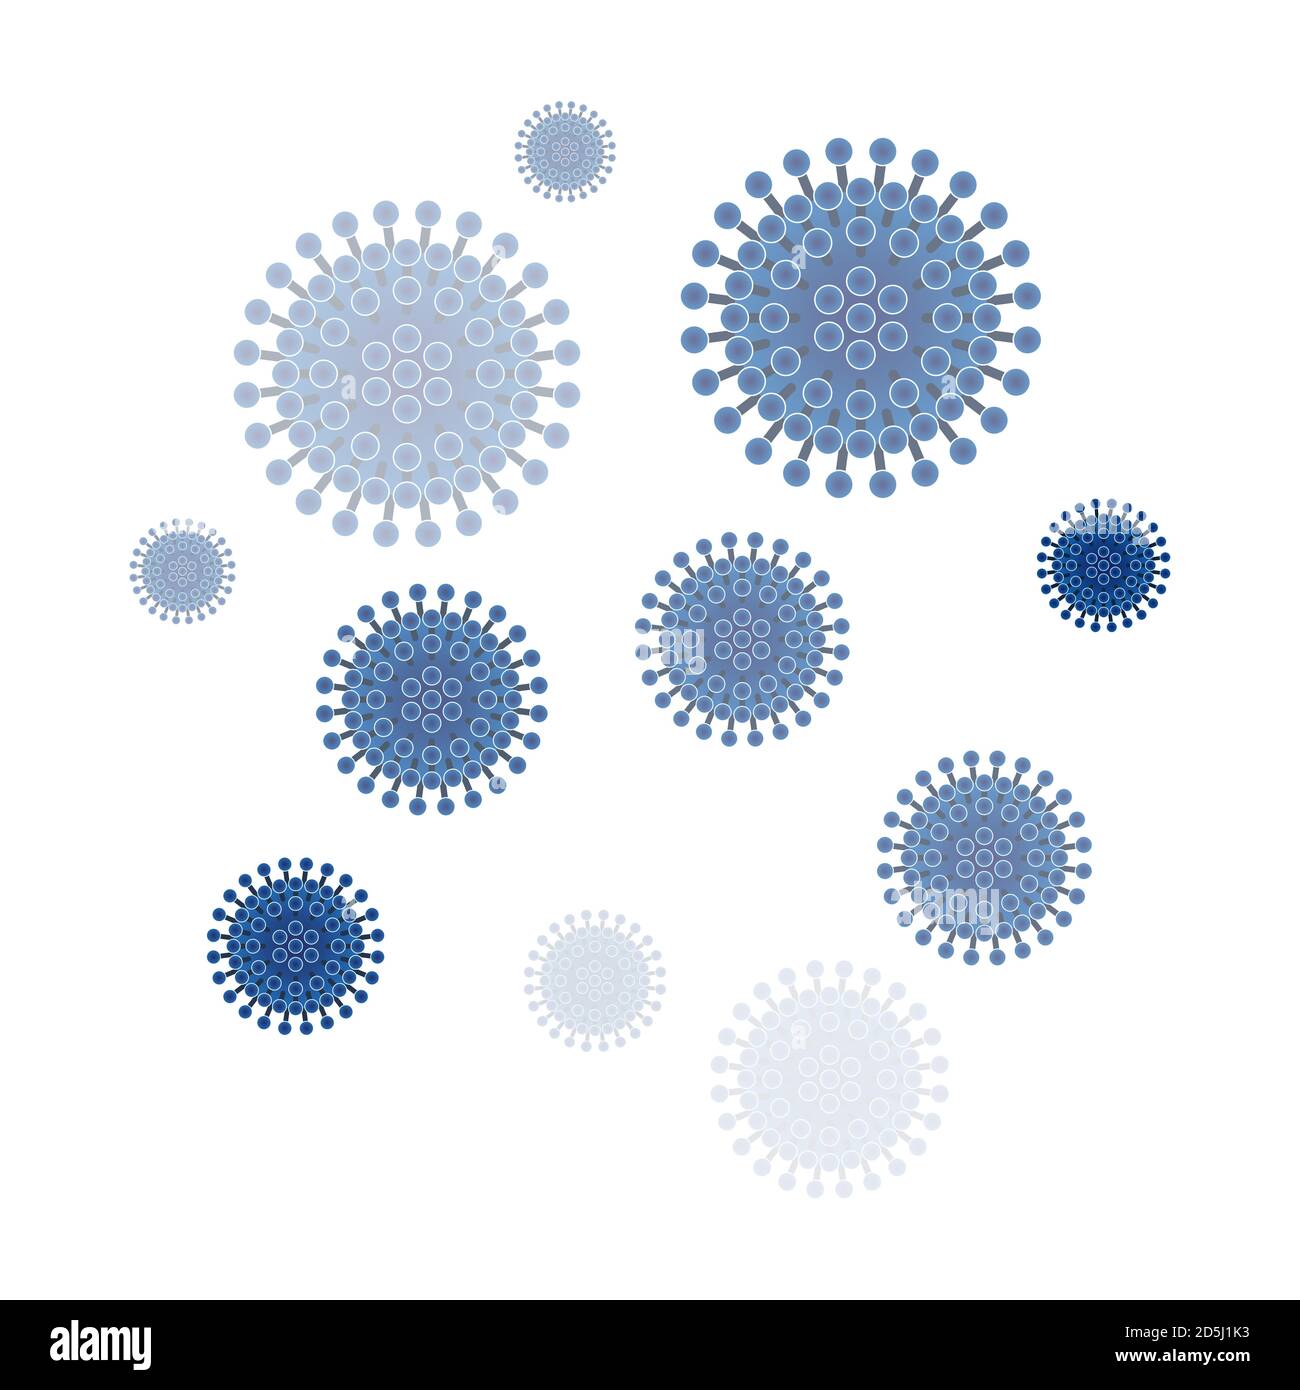 Pericolosi virus rotondi blu con ventose. Coronavirus. COVID-19. Illustrazione vettoriale per uso scientifico e medico Illustrazione Vettoriale